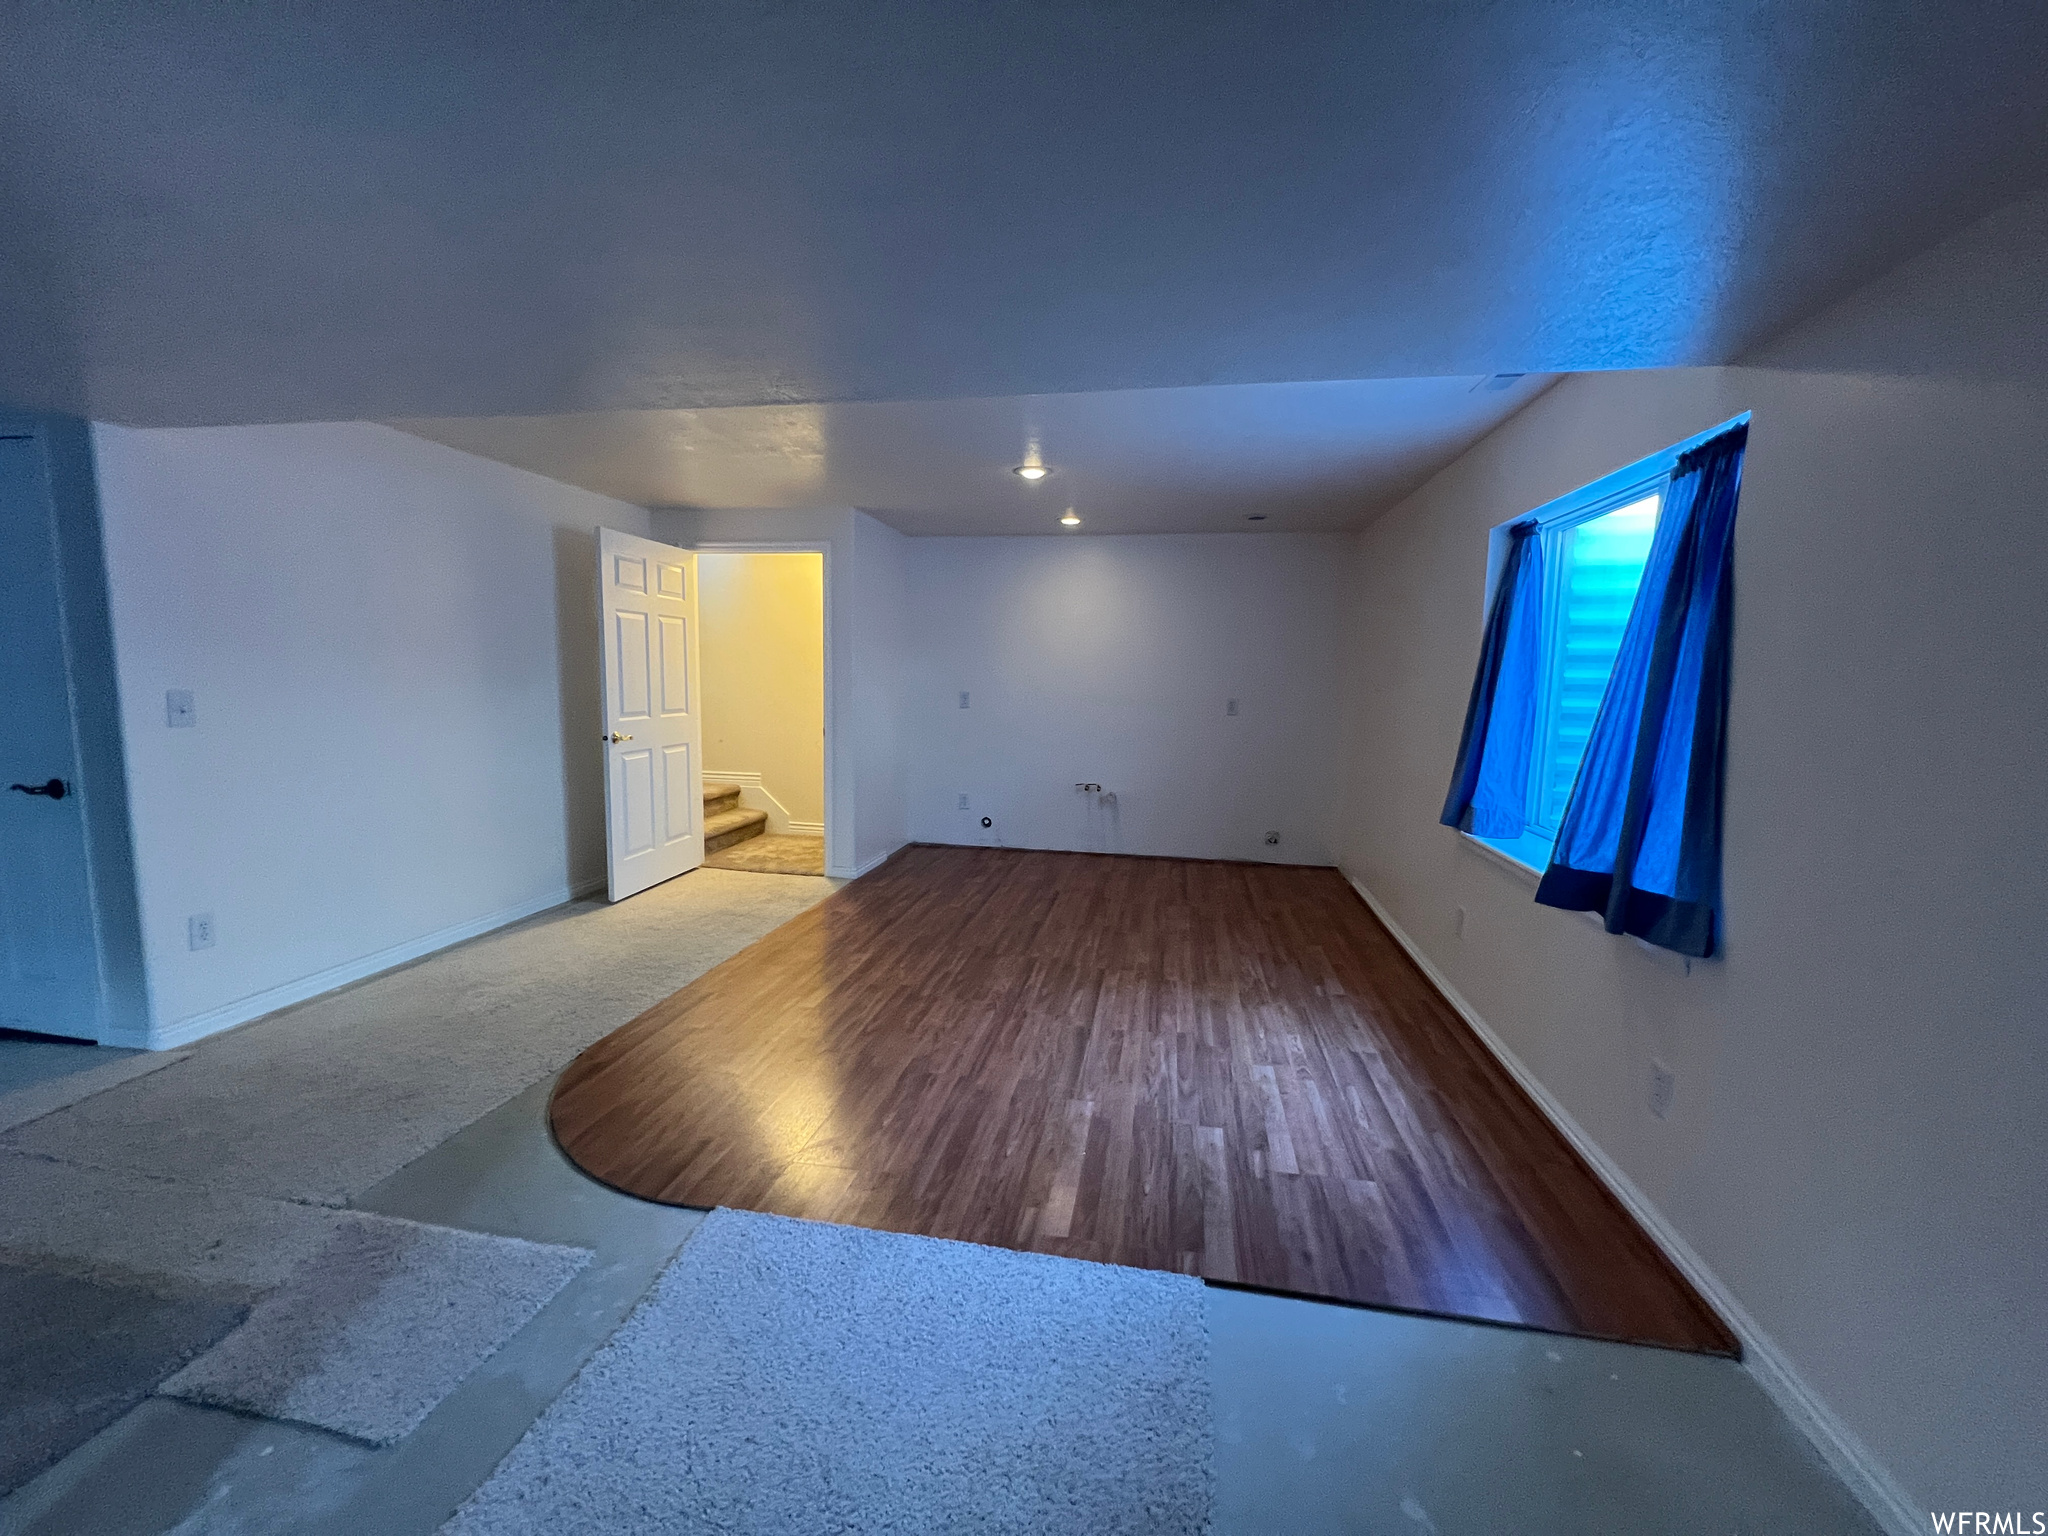 Unfurnished room featuring hardwood floors